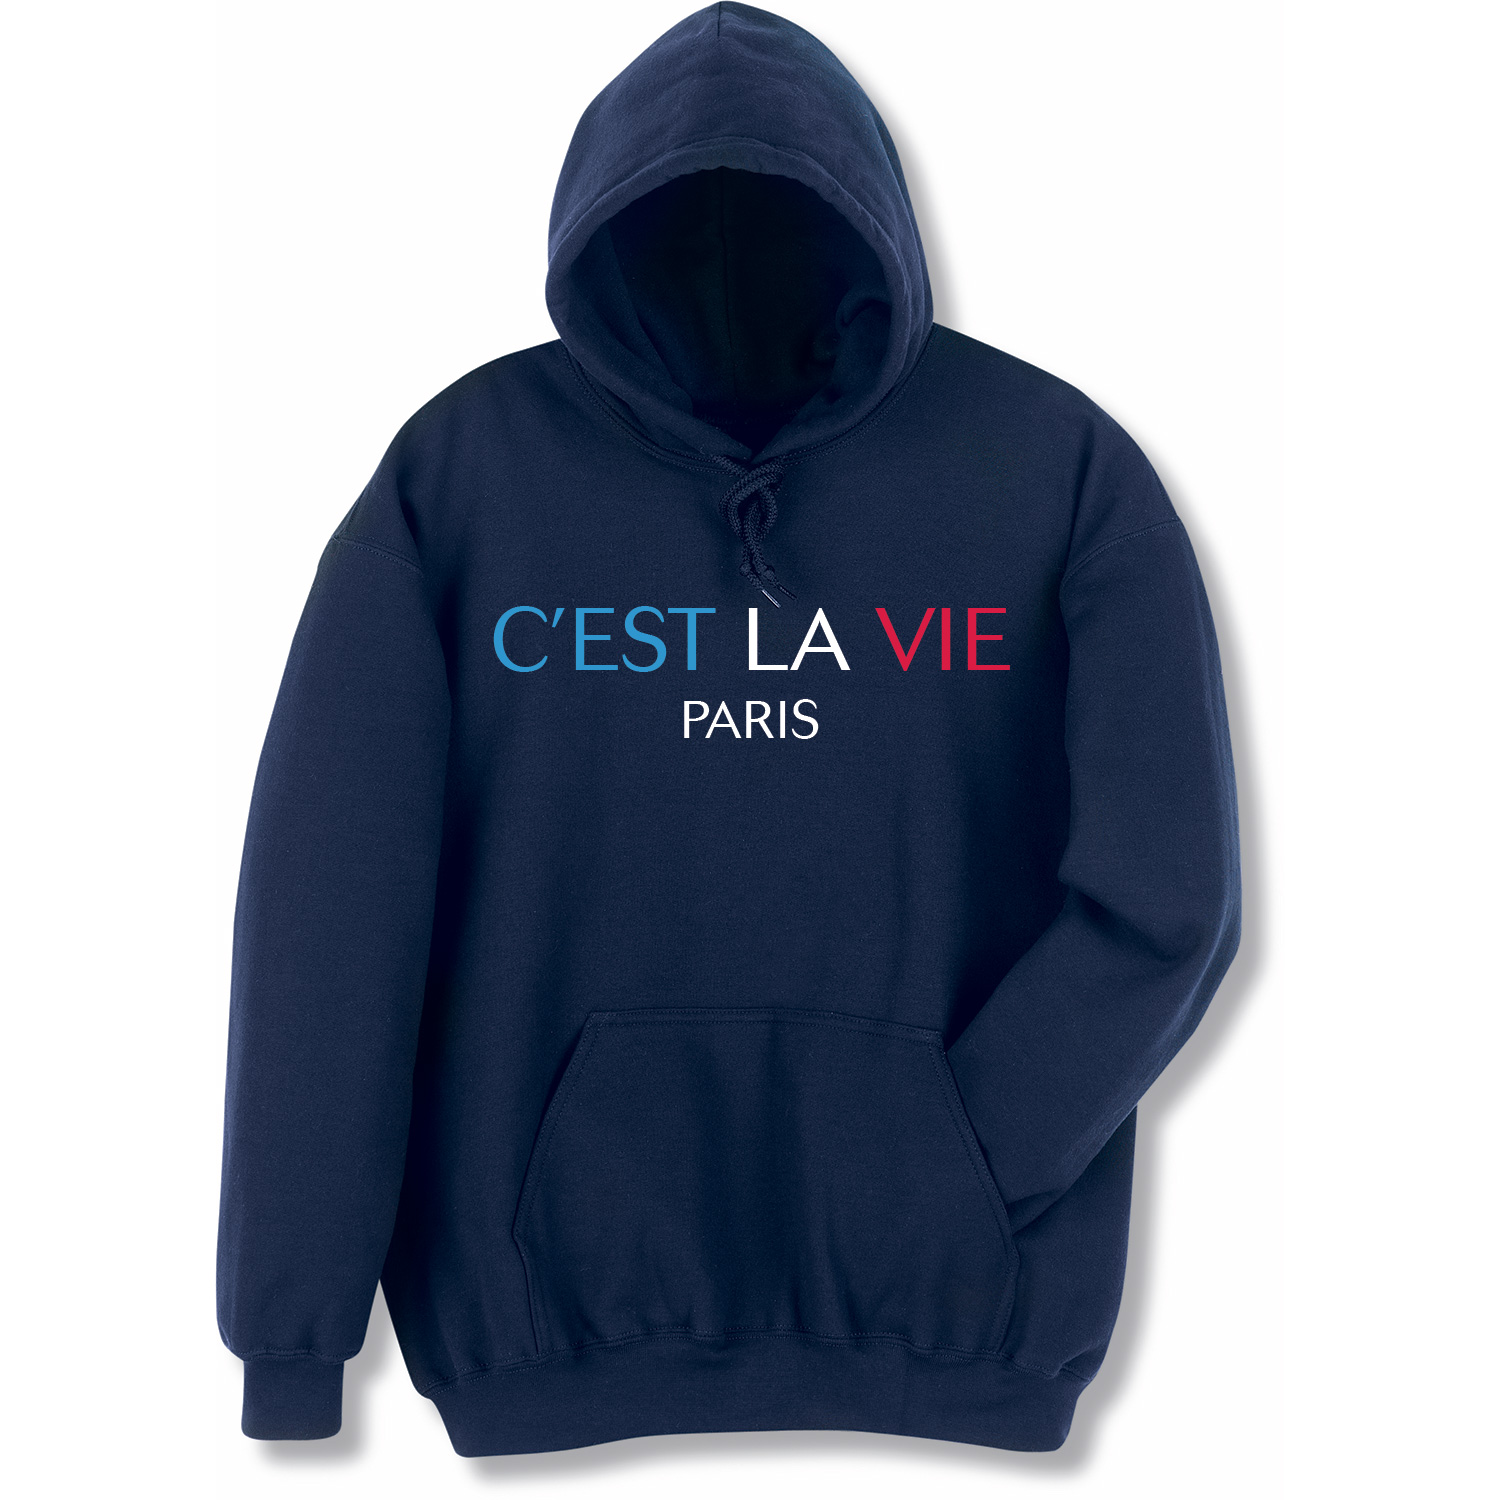 C'est La Vie Paris T-Shirt or Sweatshirt | Shop.PBS.org